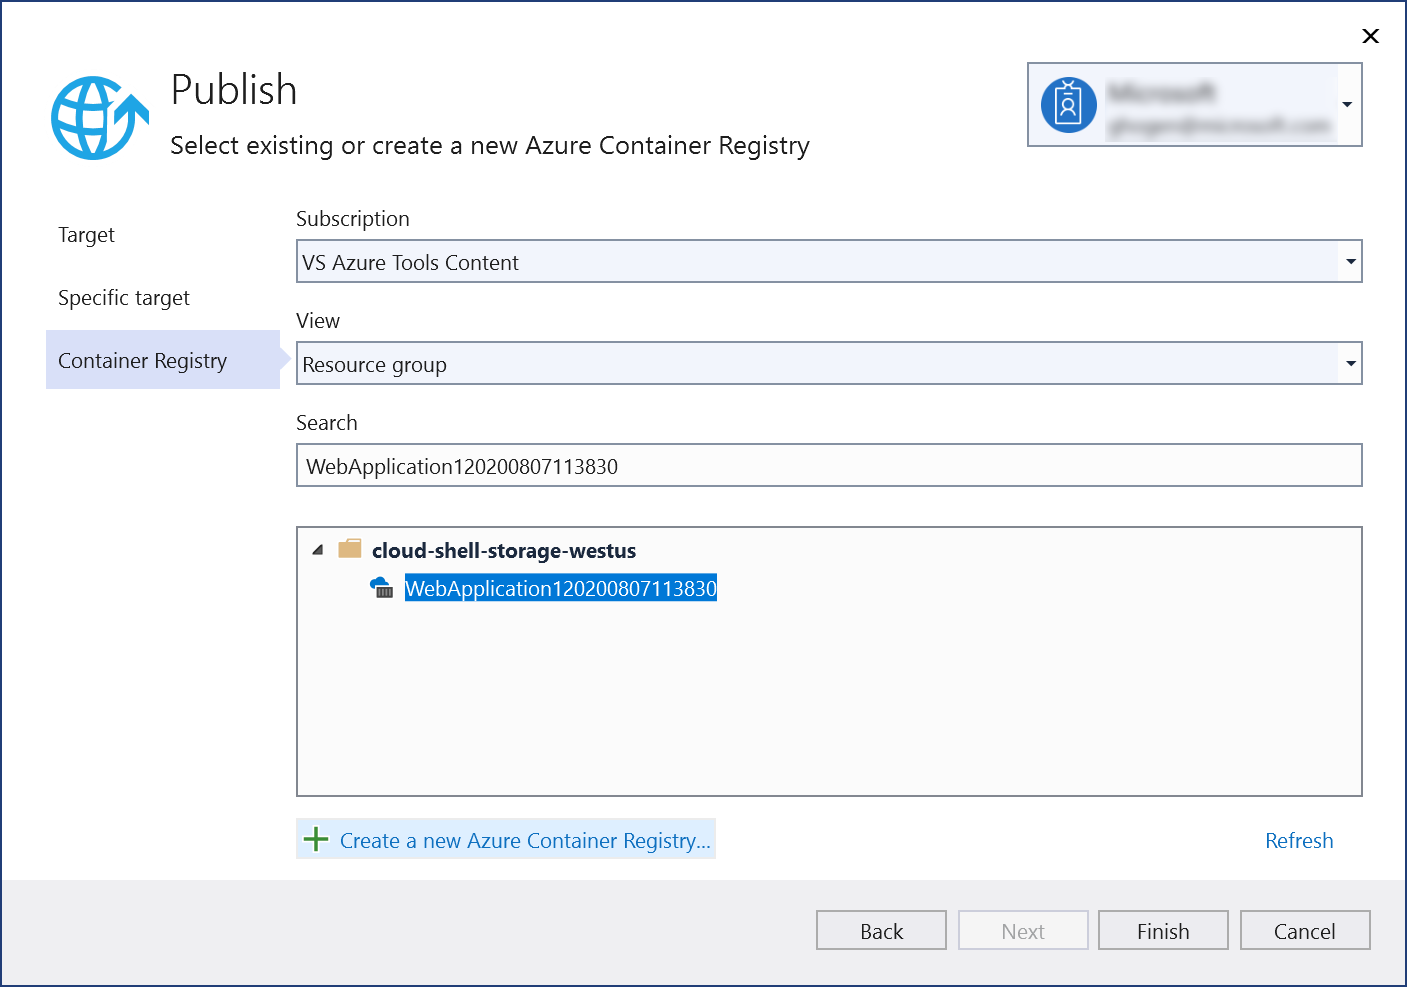 発行ダイアログのスクリーンショット。作成した Azure Container Registry を確認できます。